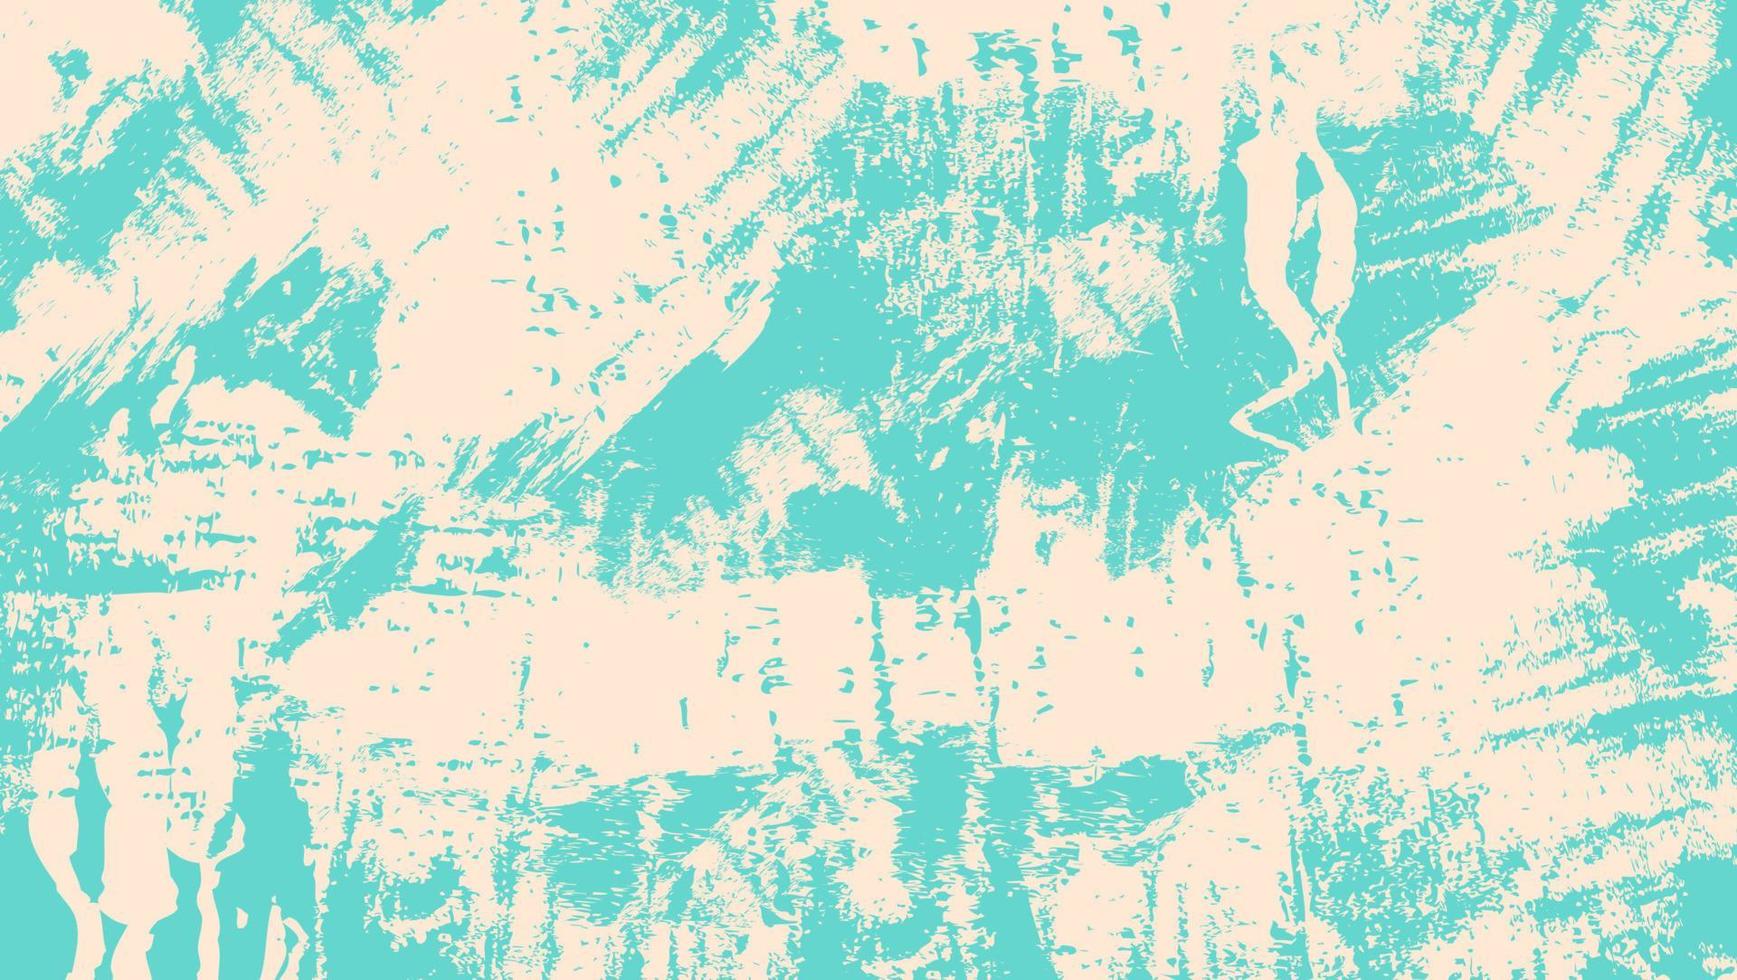 caos astratto blu bianco grunge texture di sfondo vettore